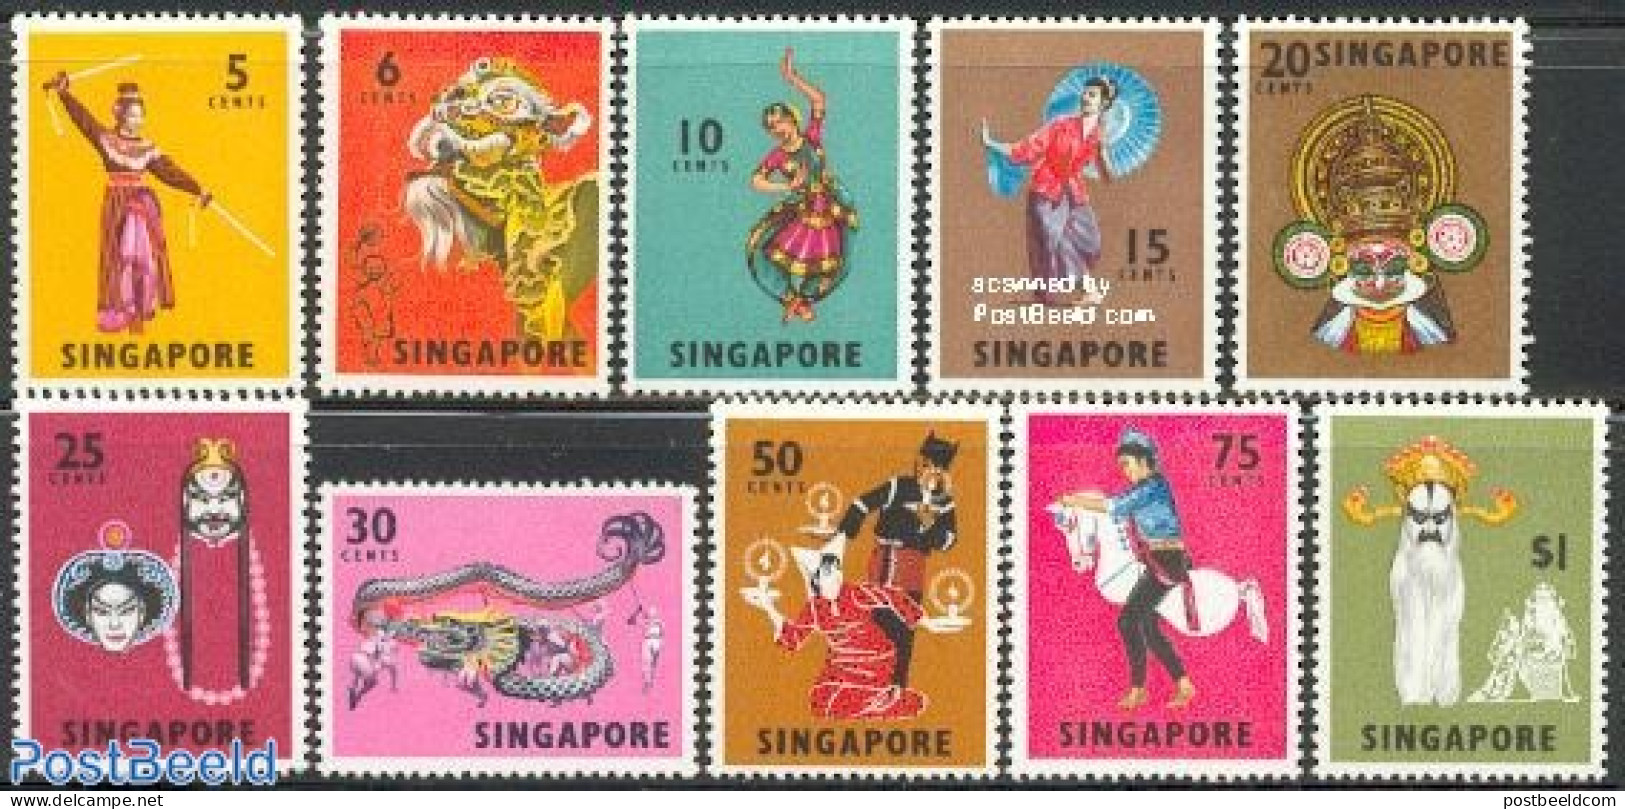 Singapore 1968 Definitives, Dances 10v, Mint NH, Performance Art - Various - Dance & Ballet - Folklore - Baile